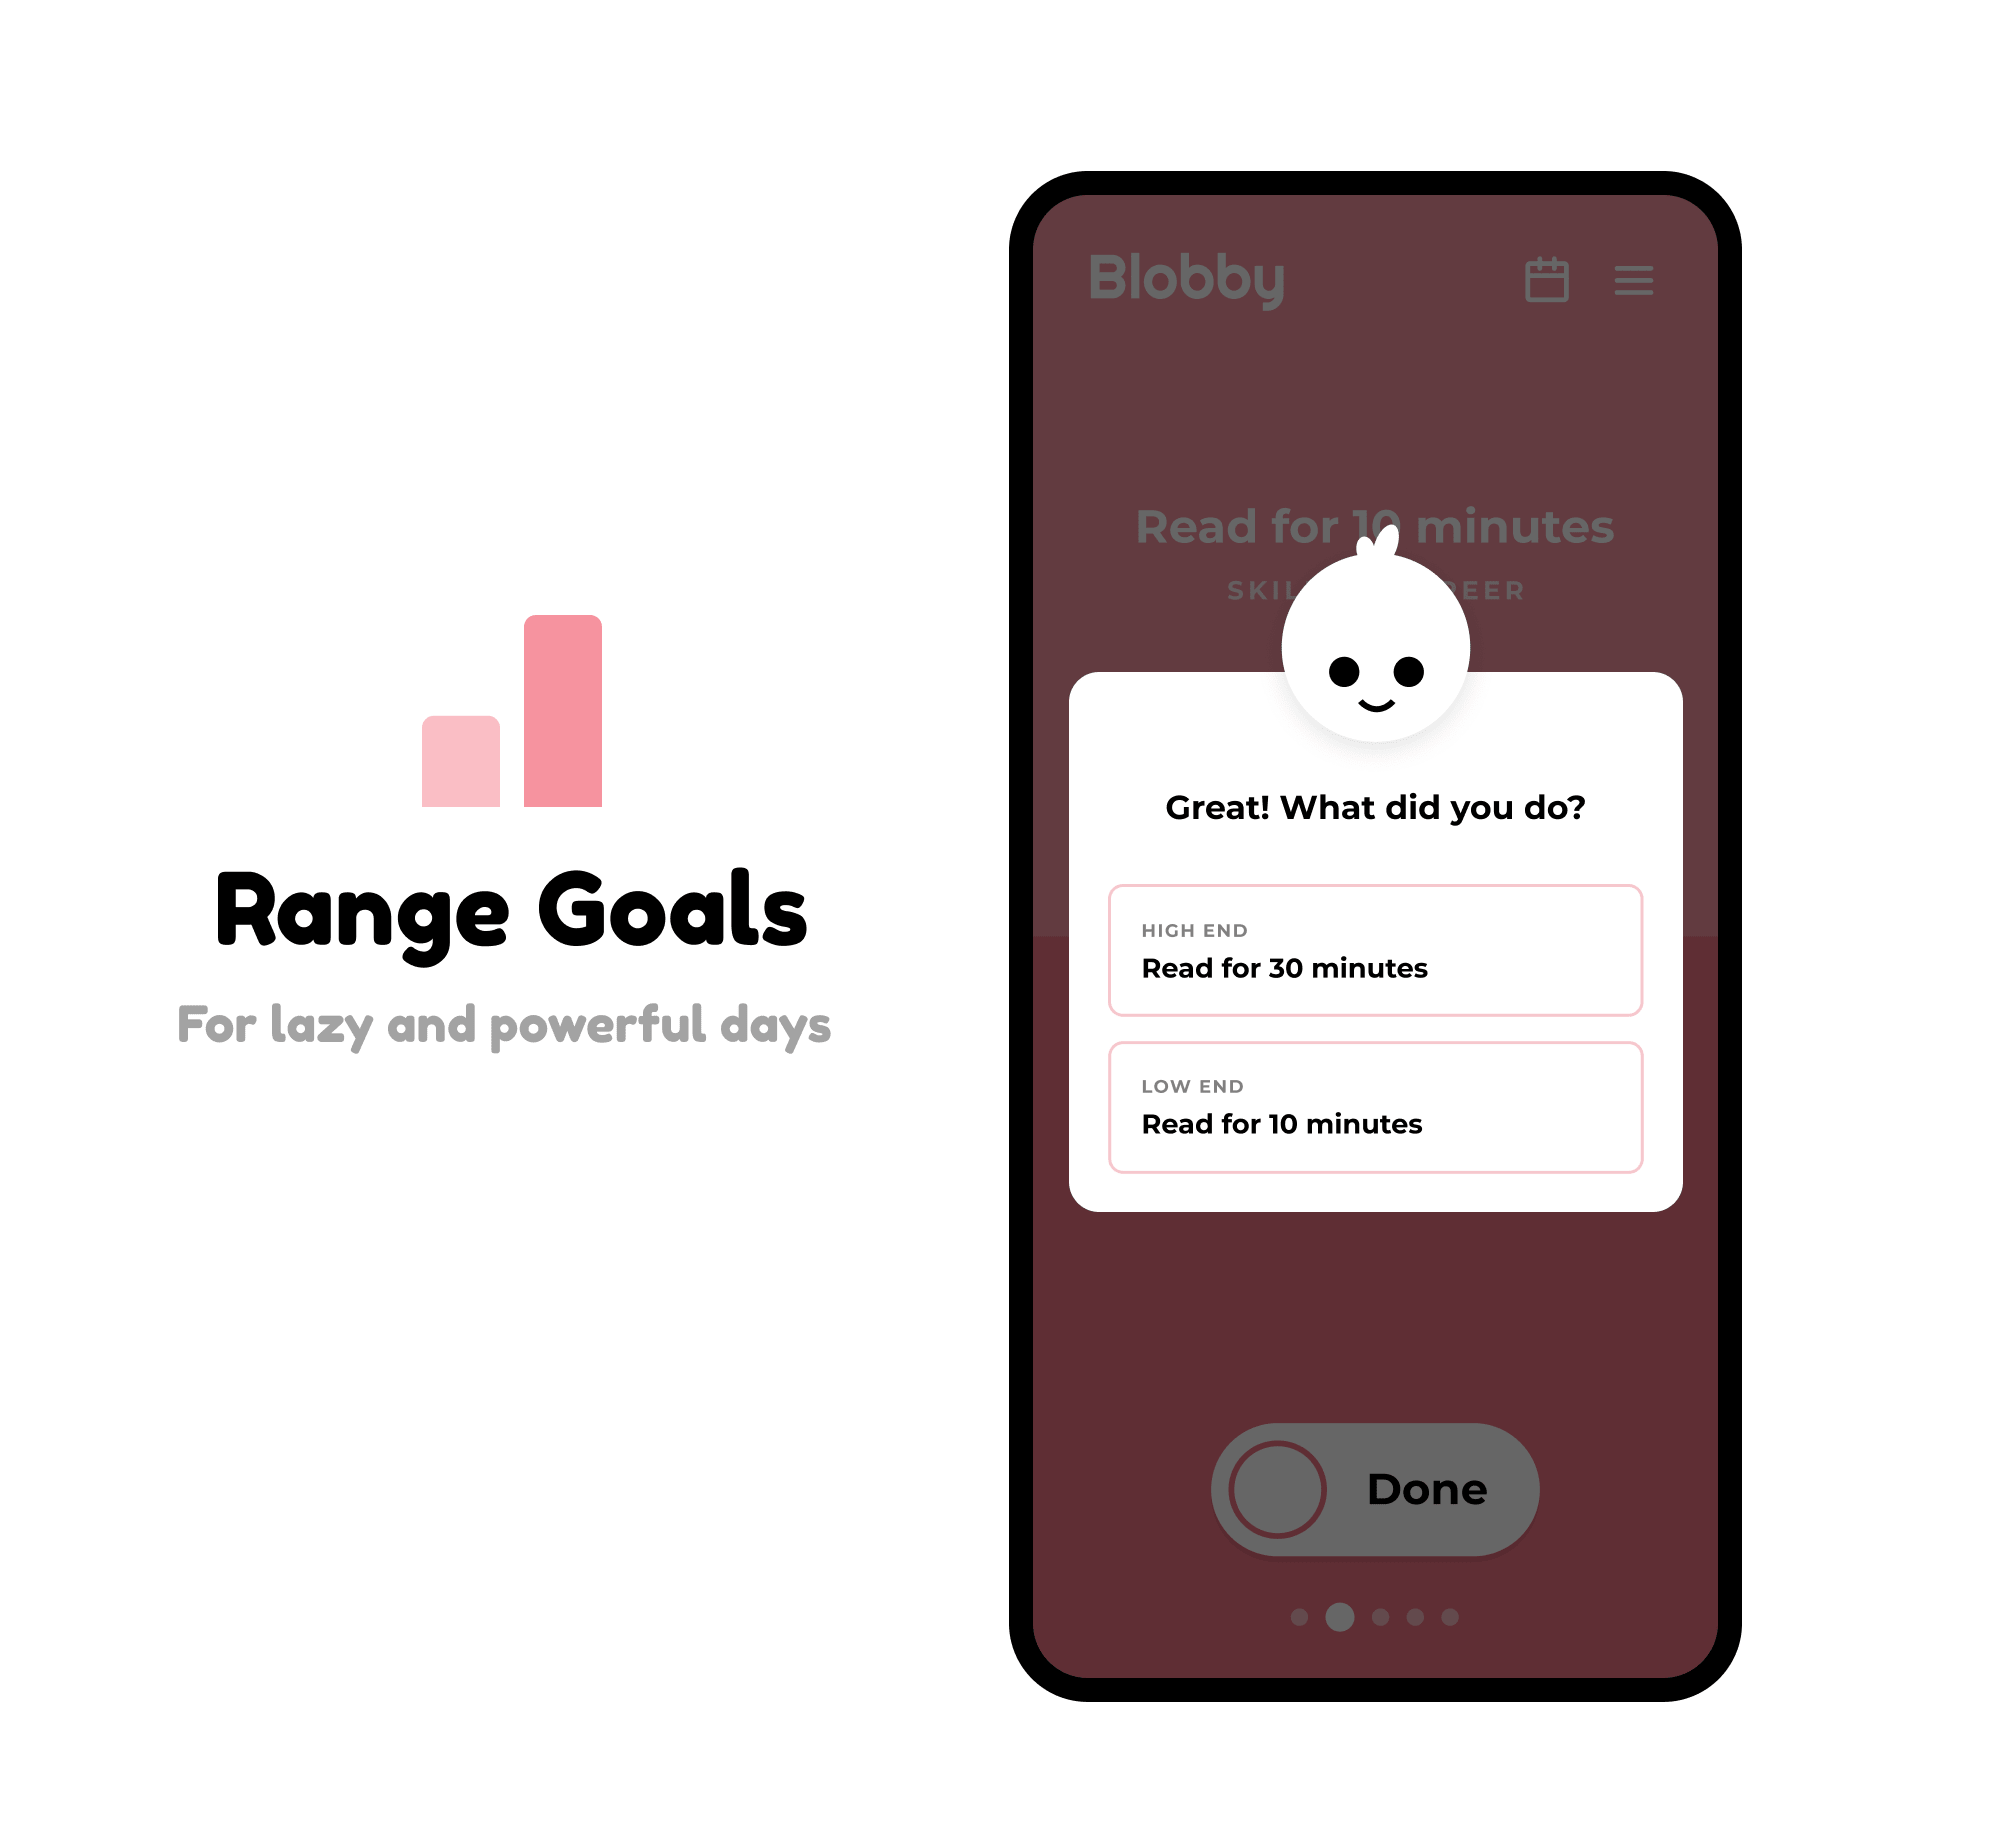 Range Goals - Define a challenge and a baseline goal.